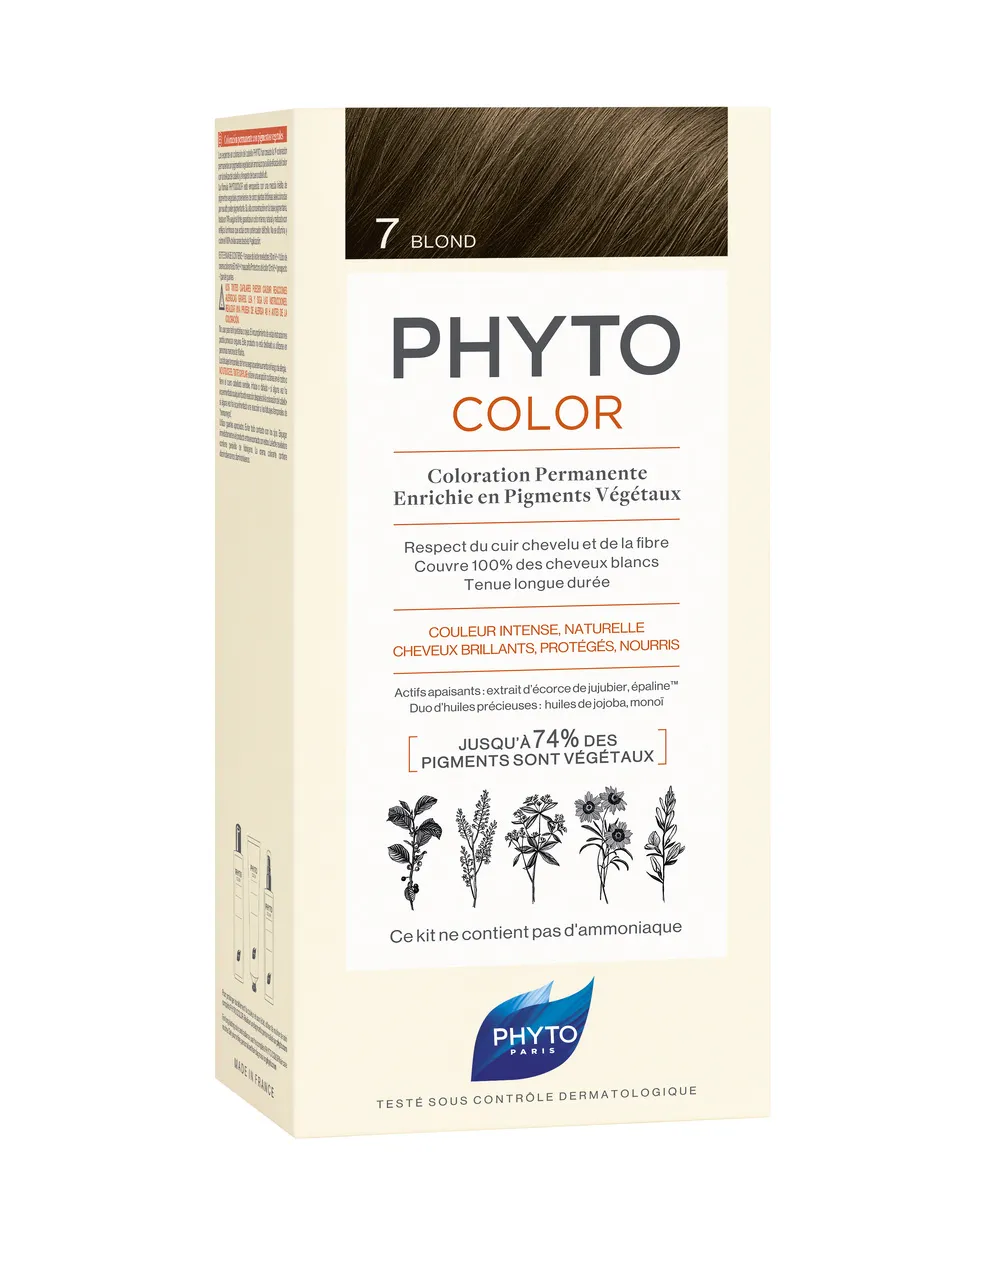 Phyto Color, farba do włosów, 7 blond, 1 opakowanie